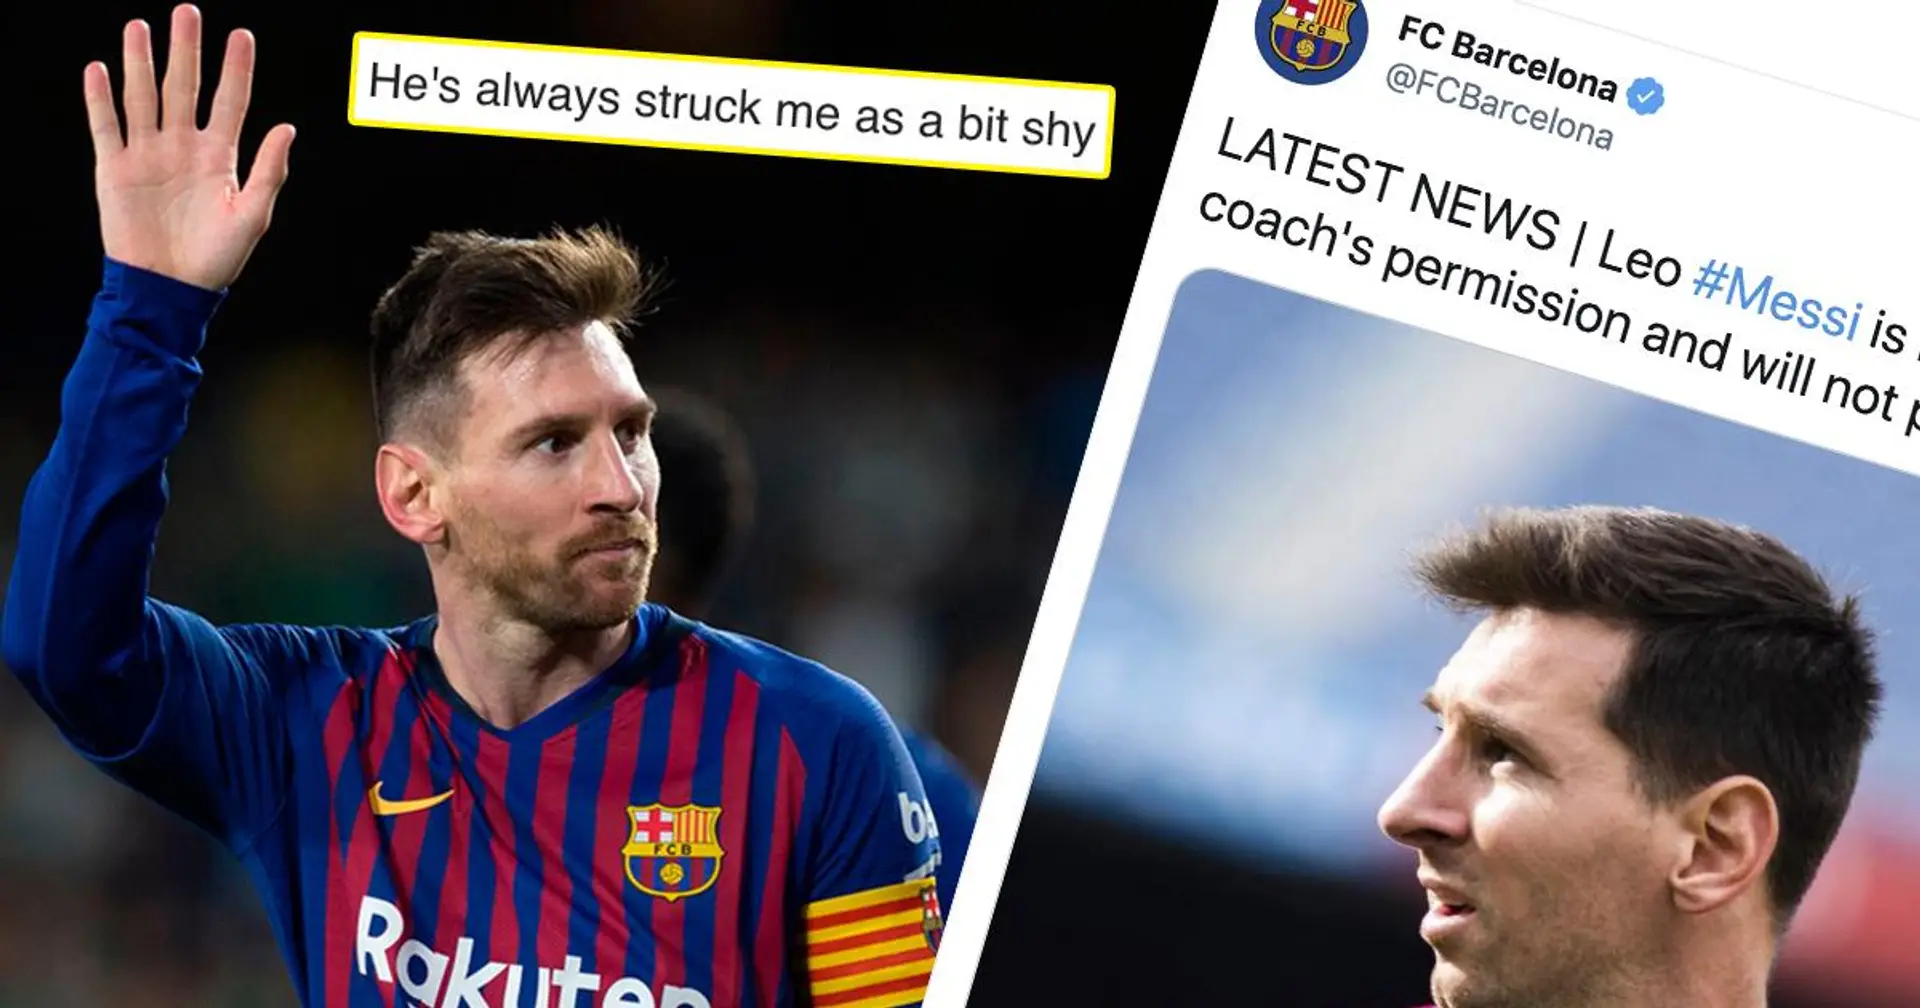 "Je ne serais pas surpris s'il ne rend pas ça public": Un fan explique pourquoi Messi déciderait de jouer son dernier match du Barça contre Celta Vigo